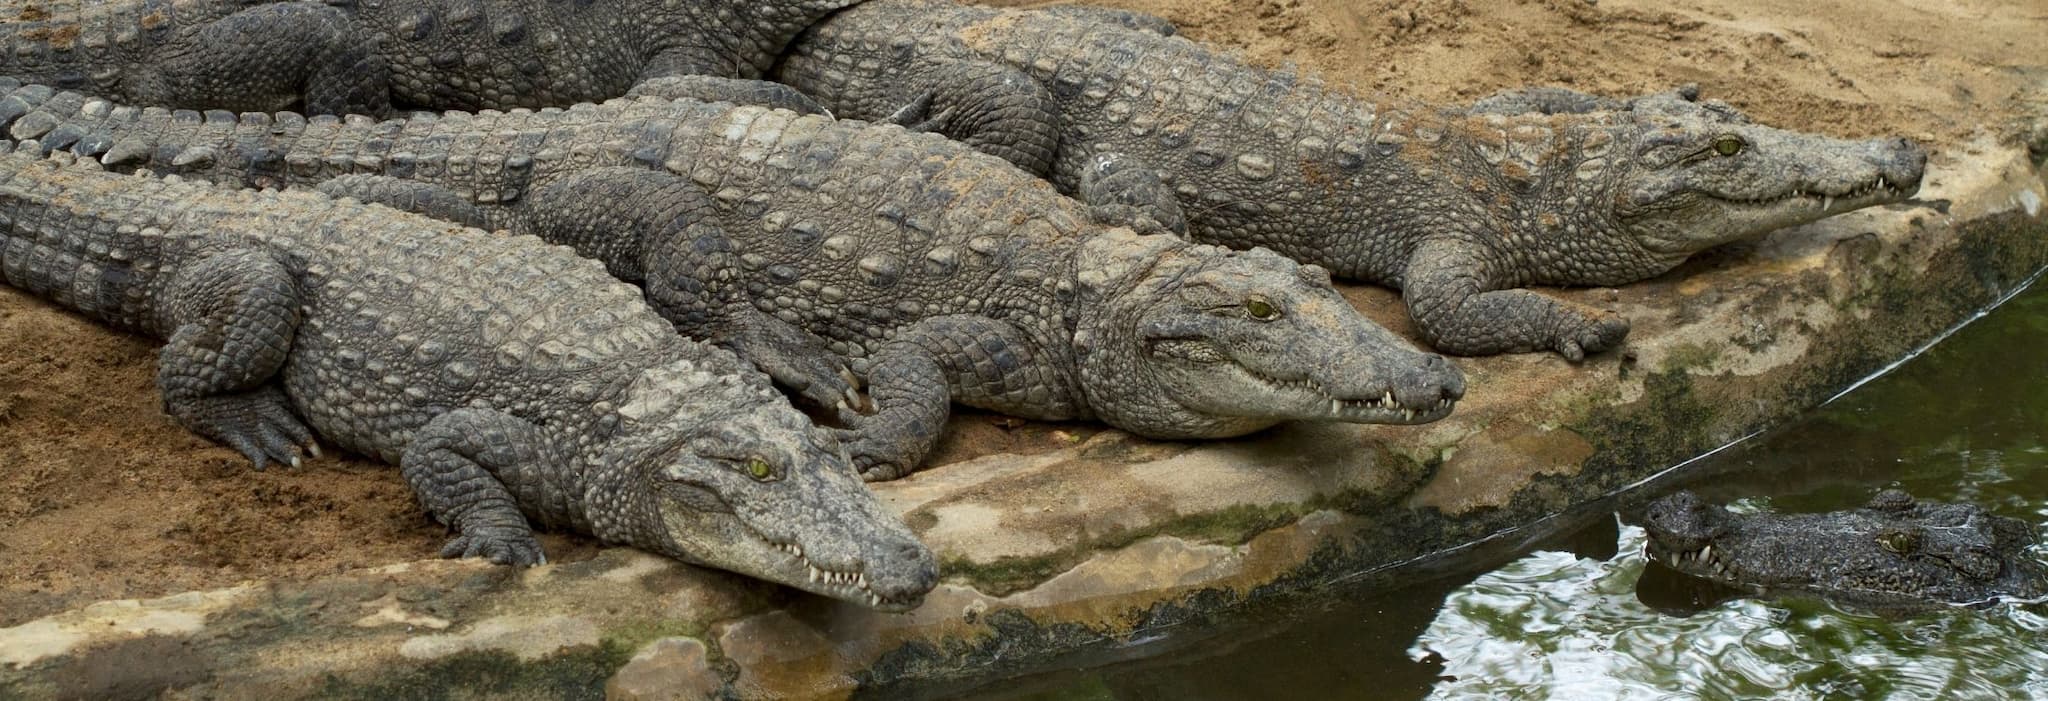 Biggest crocodile sanctuary in India has reptiles for adoption